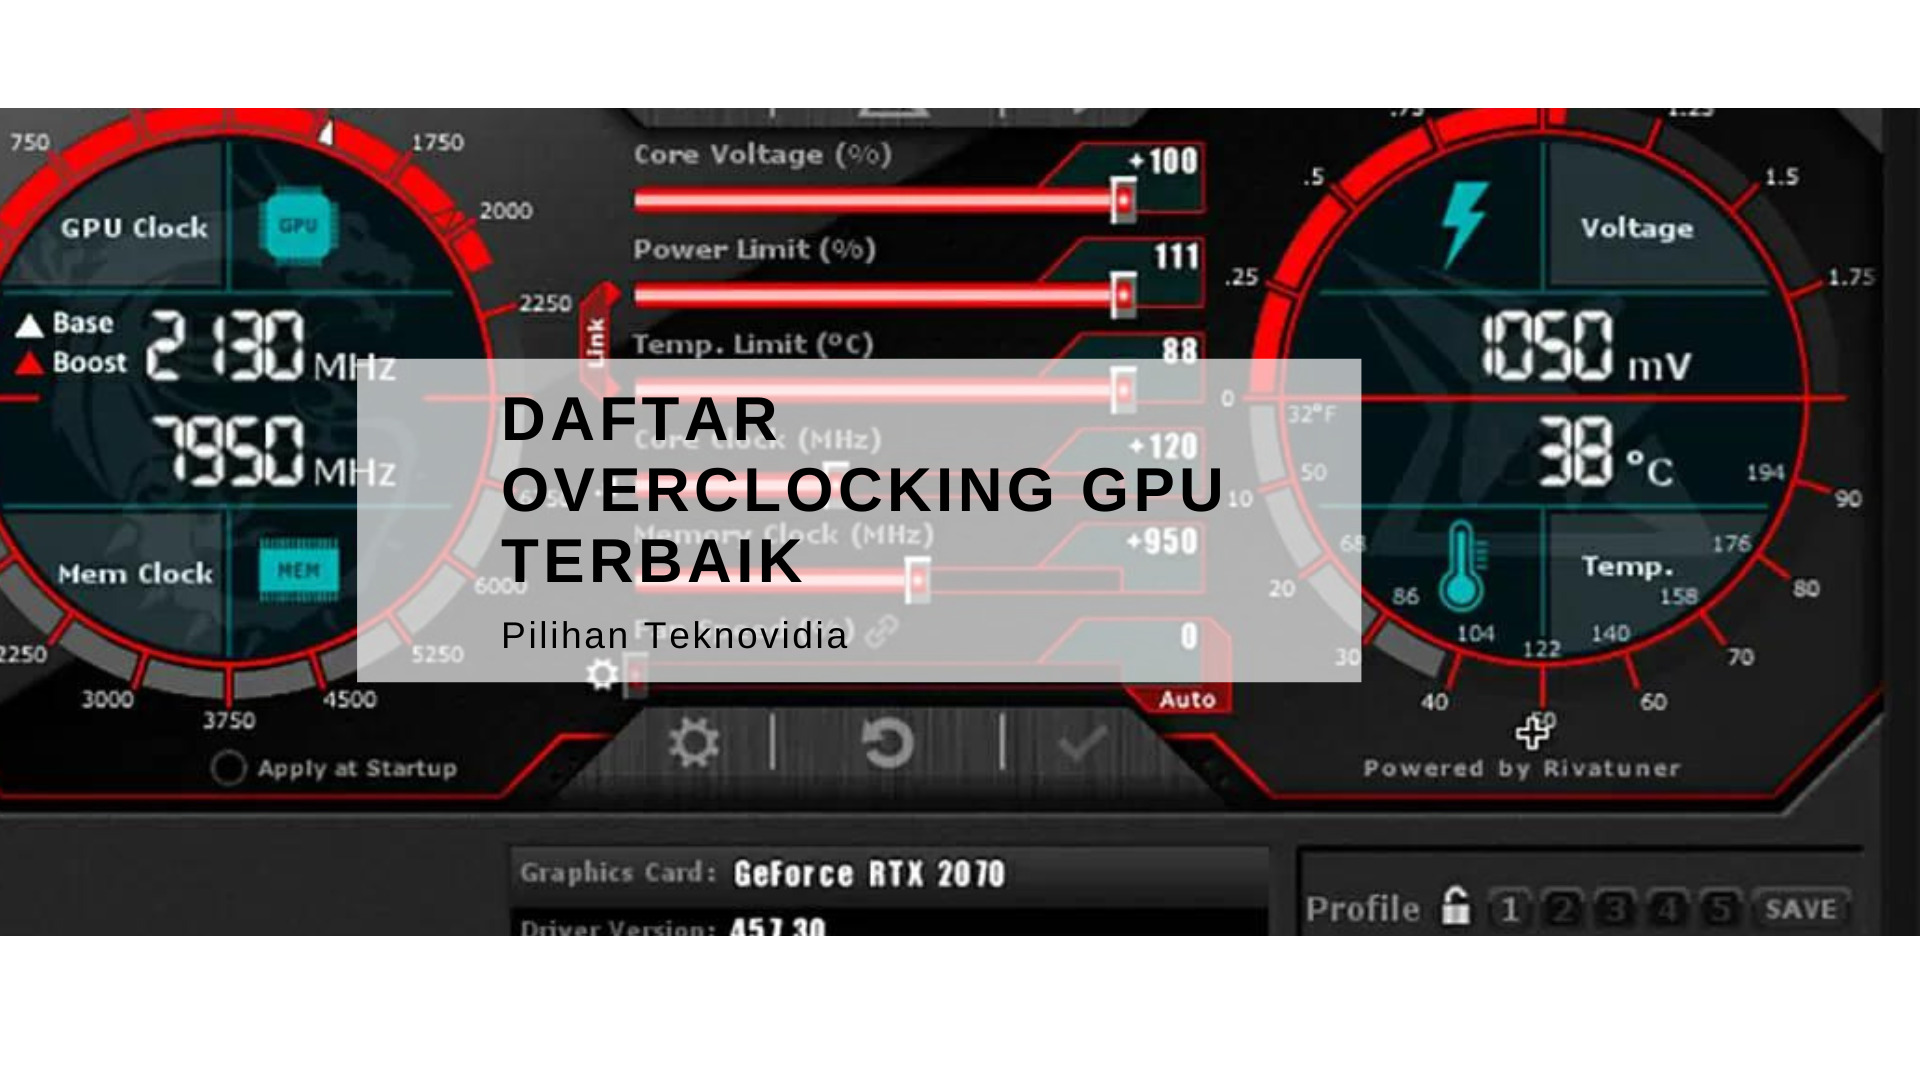 Daftar Overclocking GPU Terbaik Pilihan Teknovidia